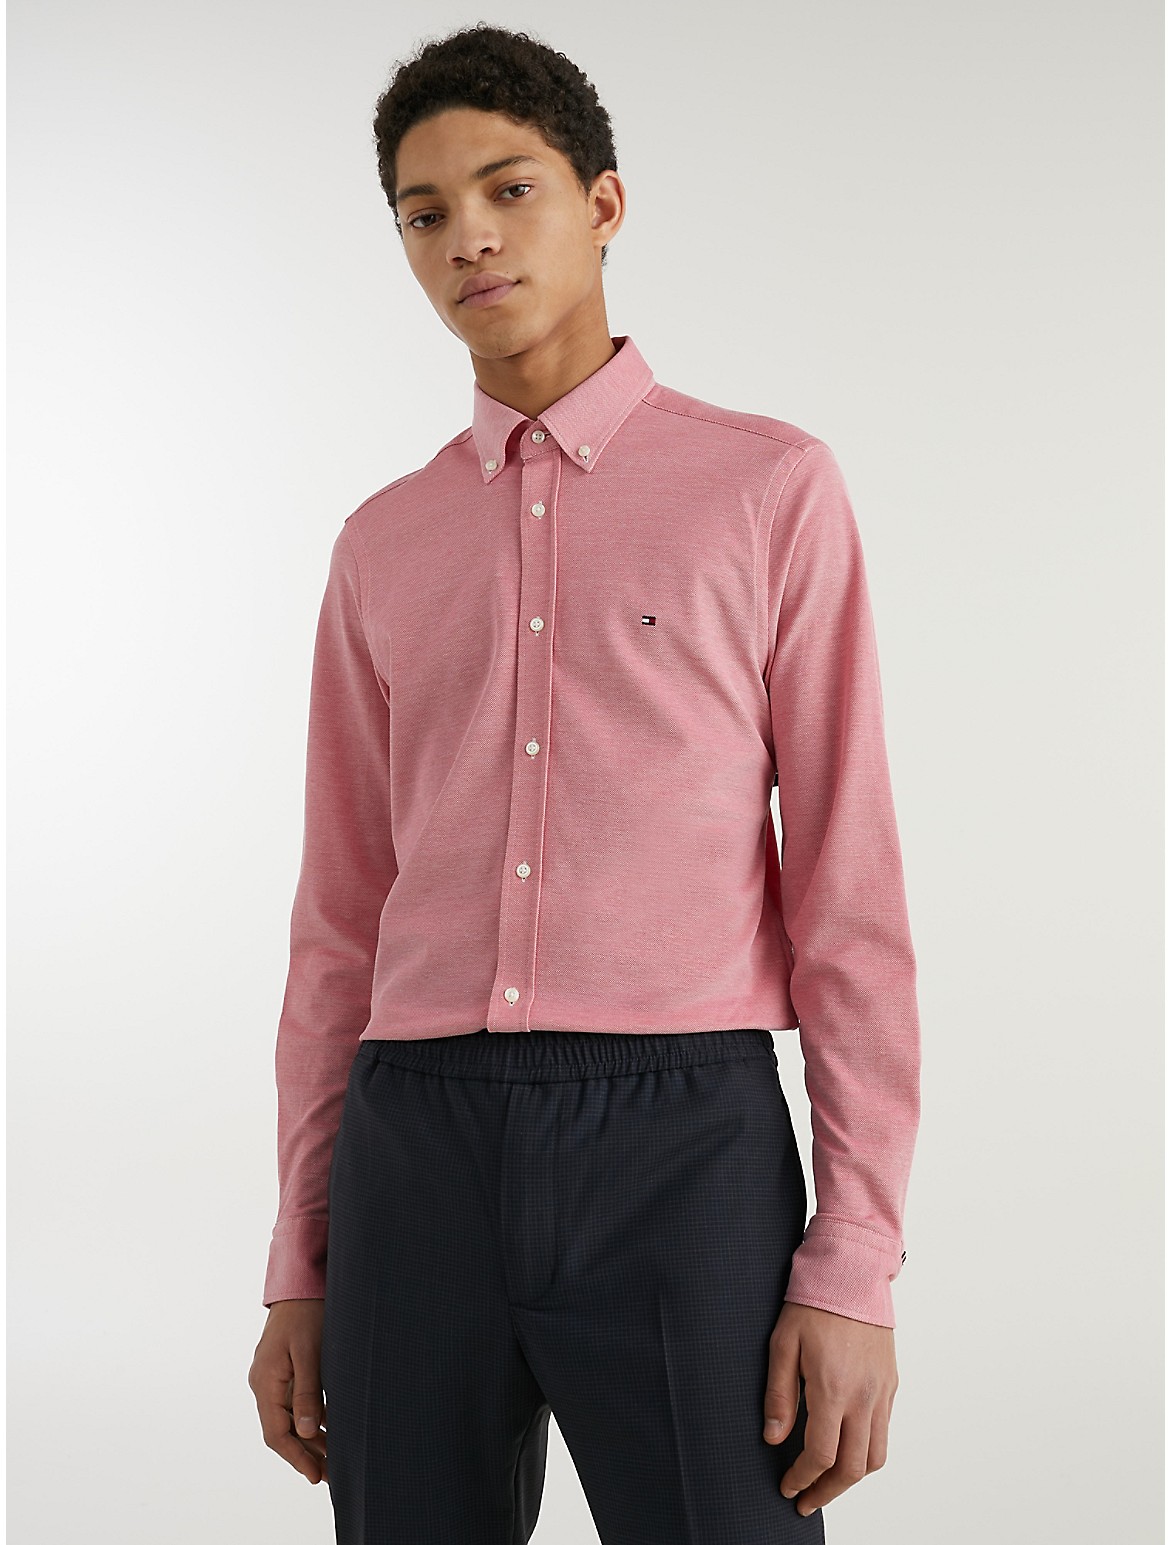 Tommy Hilfiger Men's Slim Fit Solid Knit Shirt